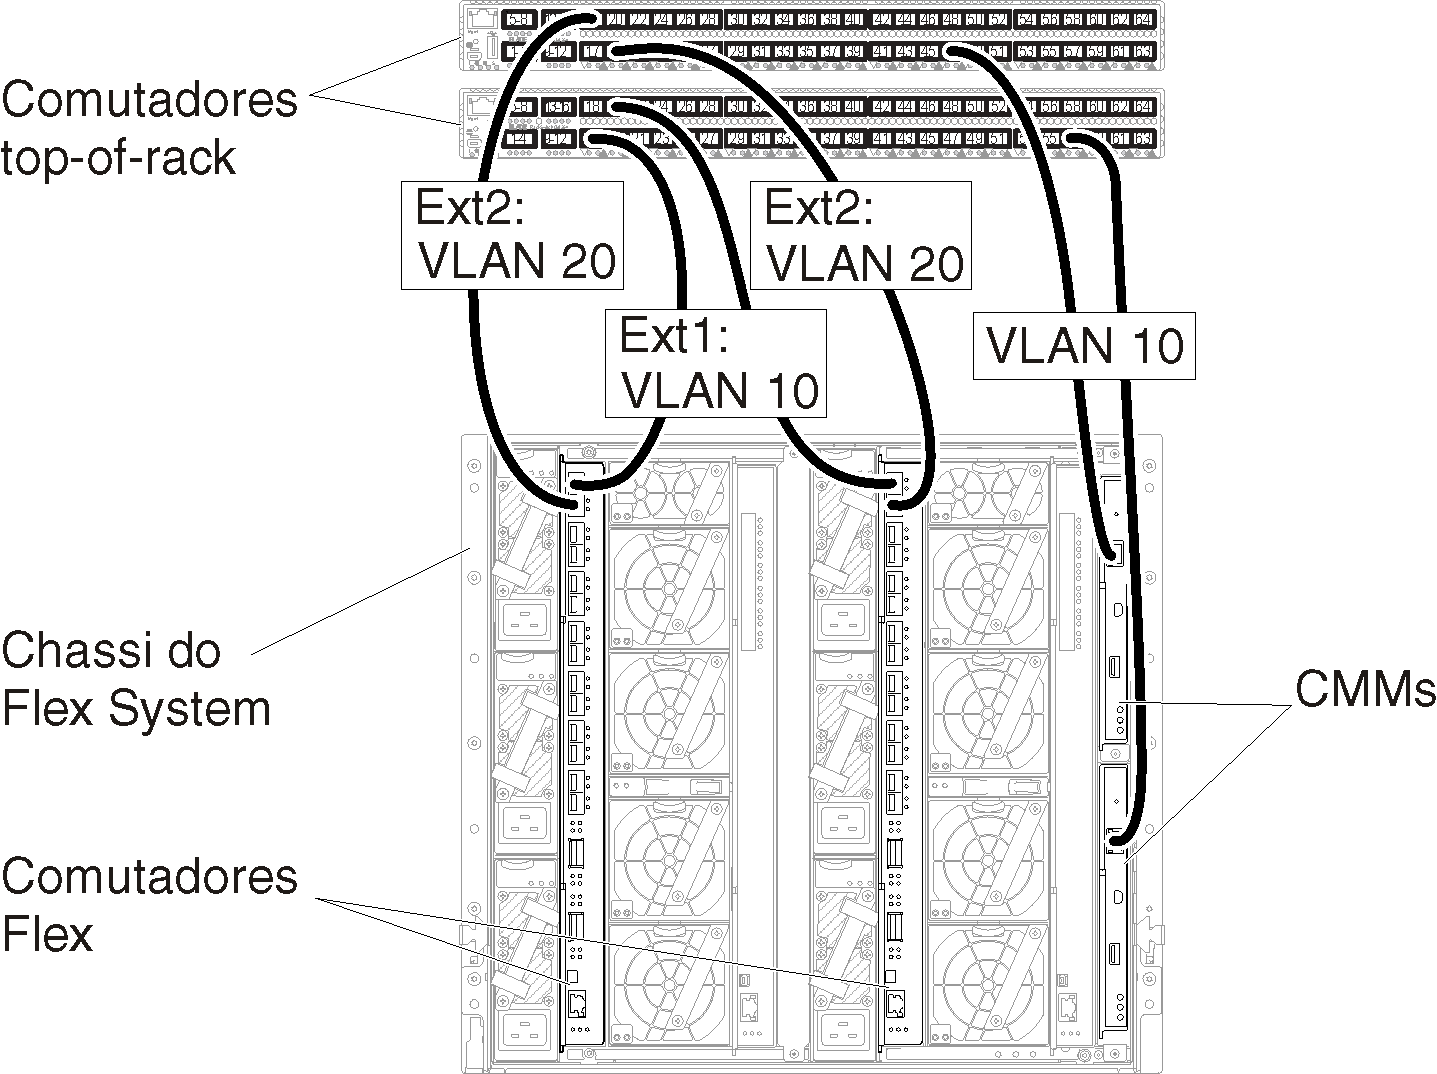 Ilustra a configuração de marcação de VLAN nas redes de gerenciamento e de dados